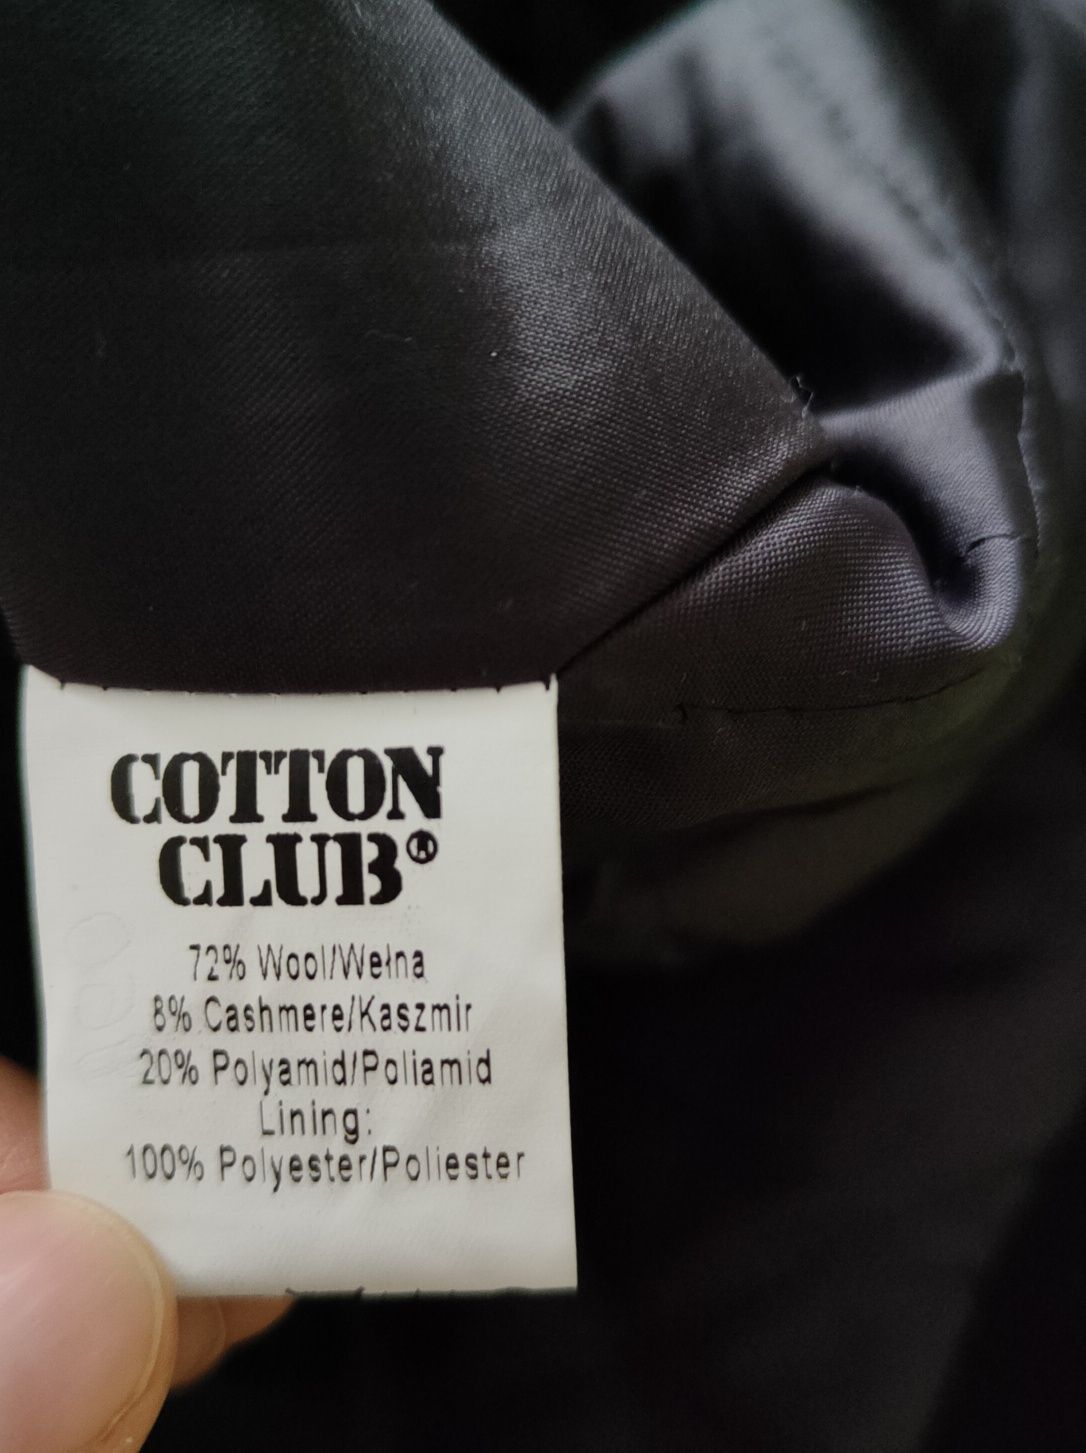 Wełniany płaszcz 36 (170) wełna 72%/kaszmir 8% cotton club